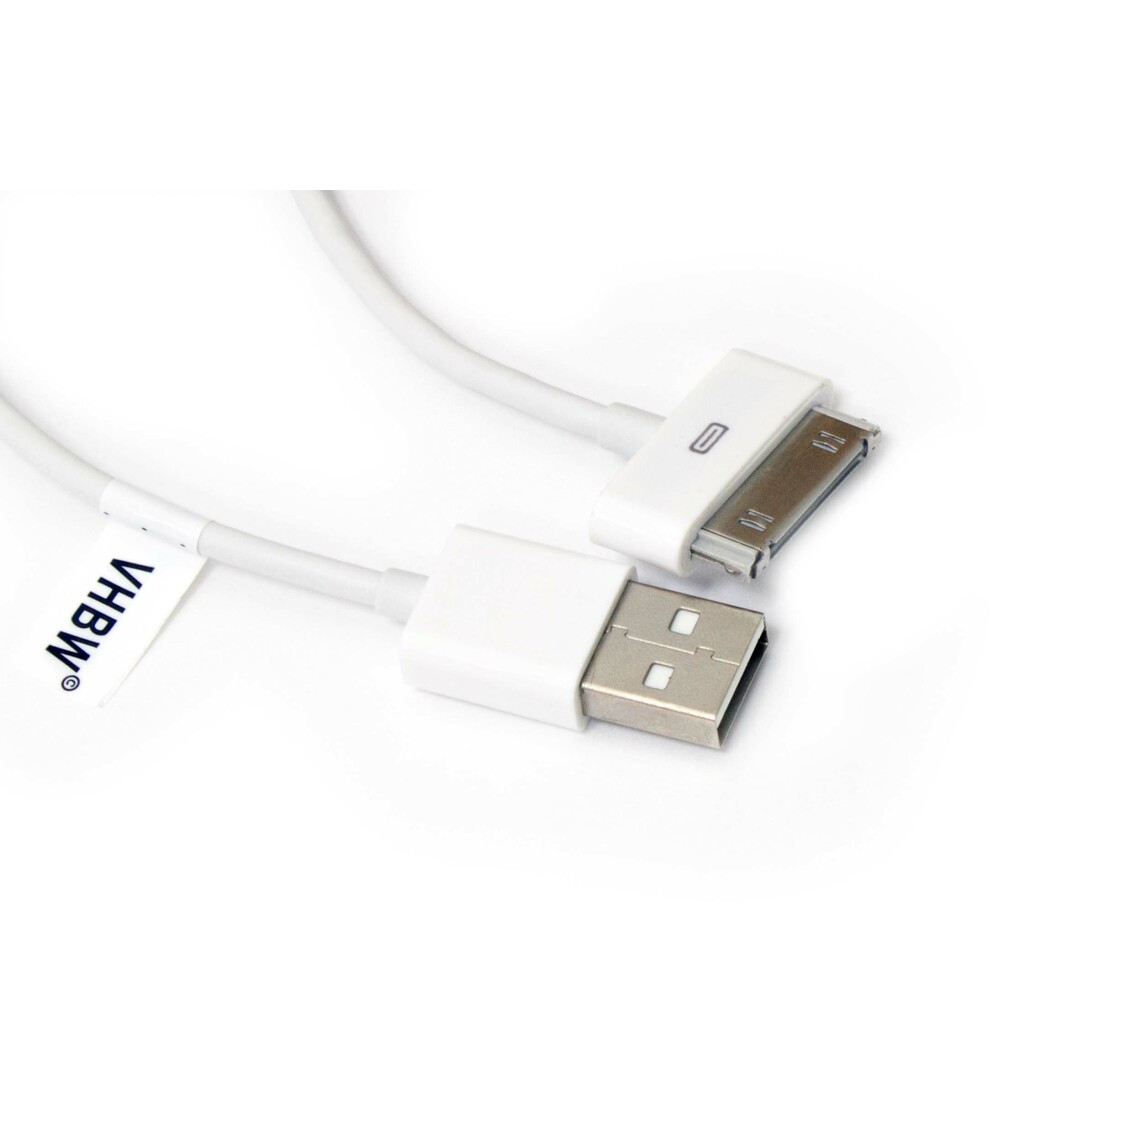 Vhbw - vhbw câble de données USB (type A sur iPod) compatible avec Apple iPod 6 Gen. (Classic) - A1238 - 80Gb lecteur MP3 - blanc - Alimentation modulaire